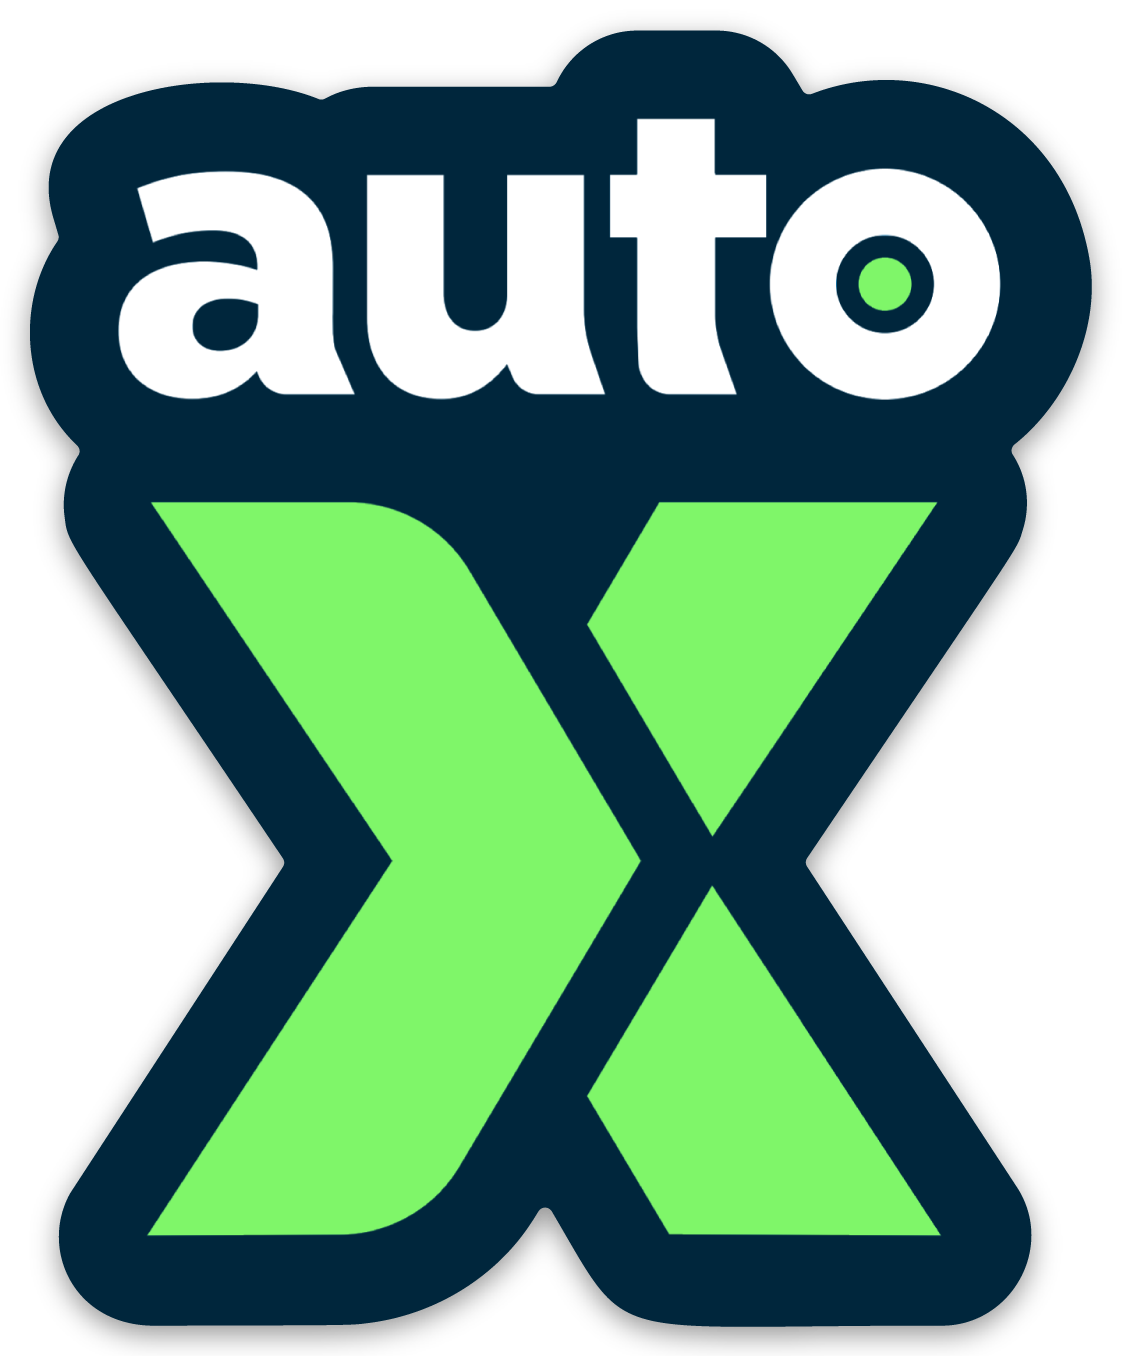 AutoX